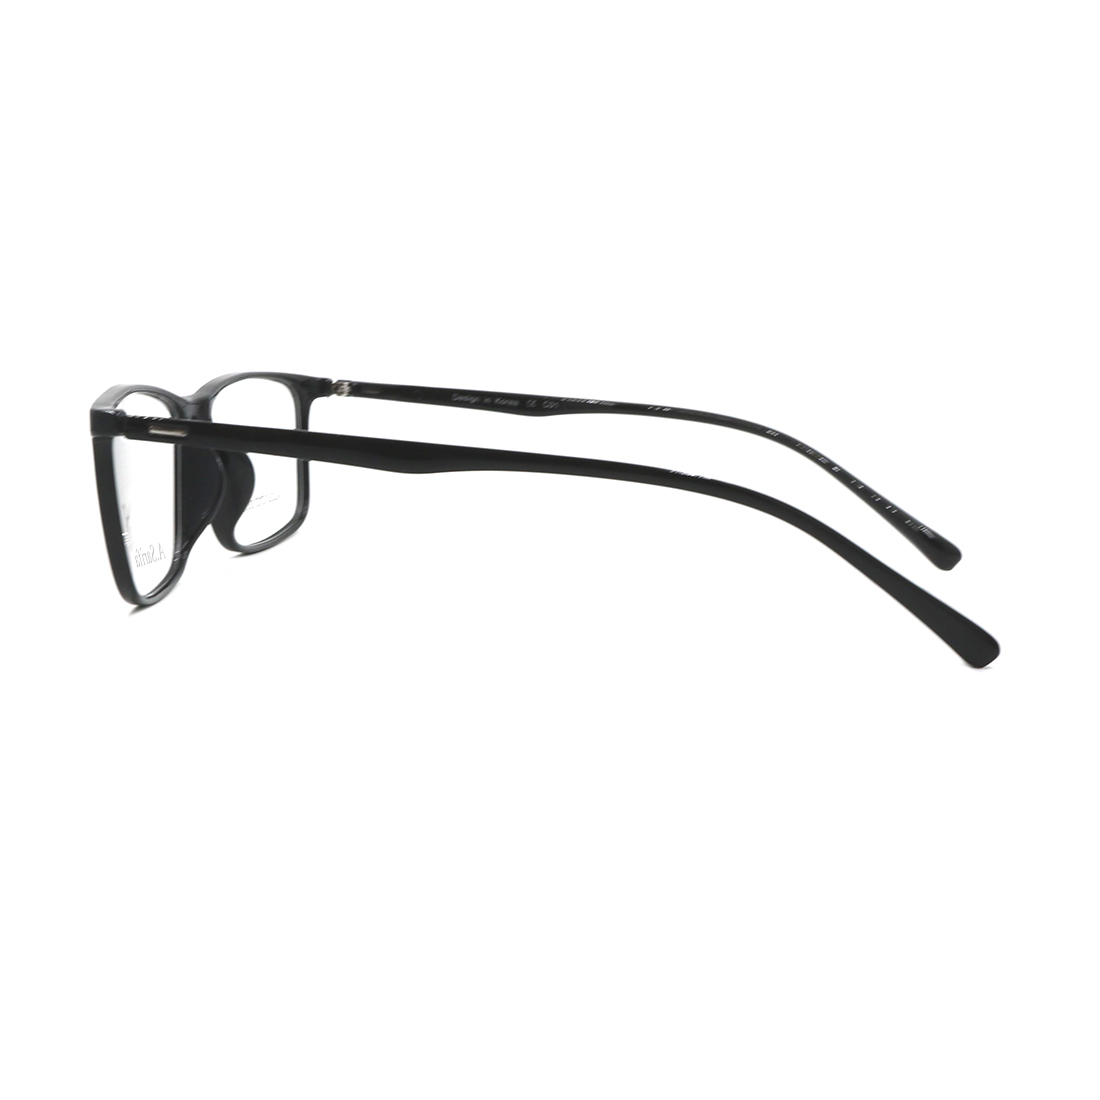 Gọng kính, mắt kính chính hãng SARIFA A1318 C01 (53-15-145) - Tặng 1 ví cầm tay (màu ngẫu nhiên)